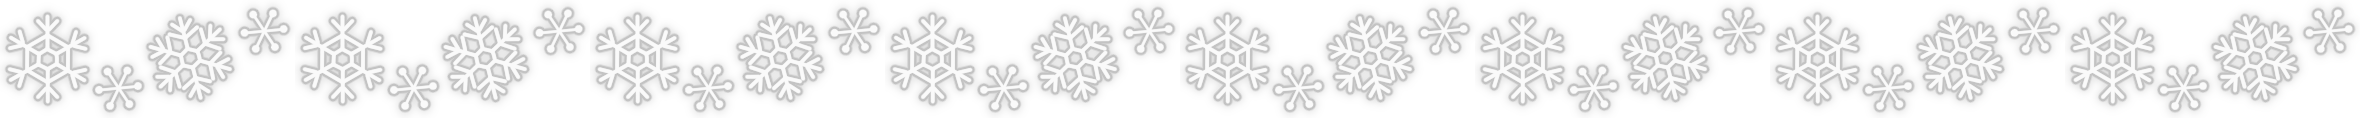 雪の結晶のライン素材 季節行事の無料イラスト素材集